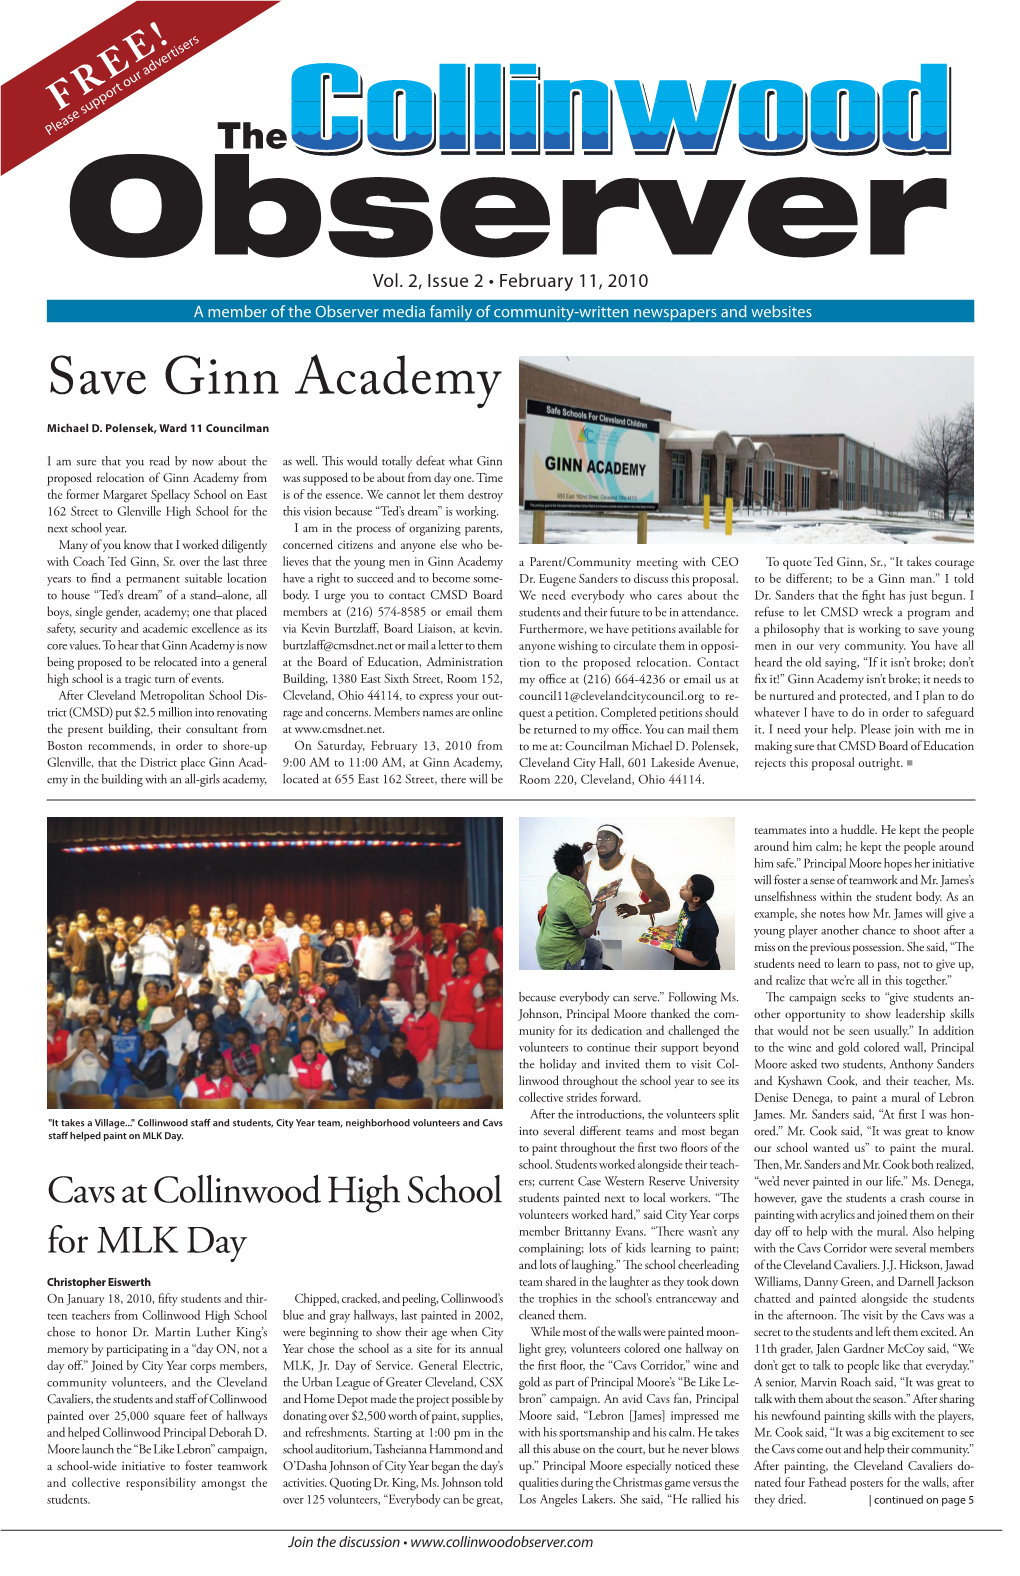 Save Ginn Academy Michael D